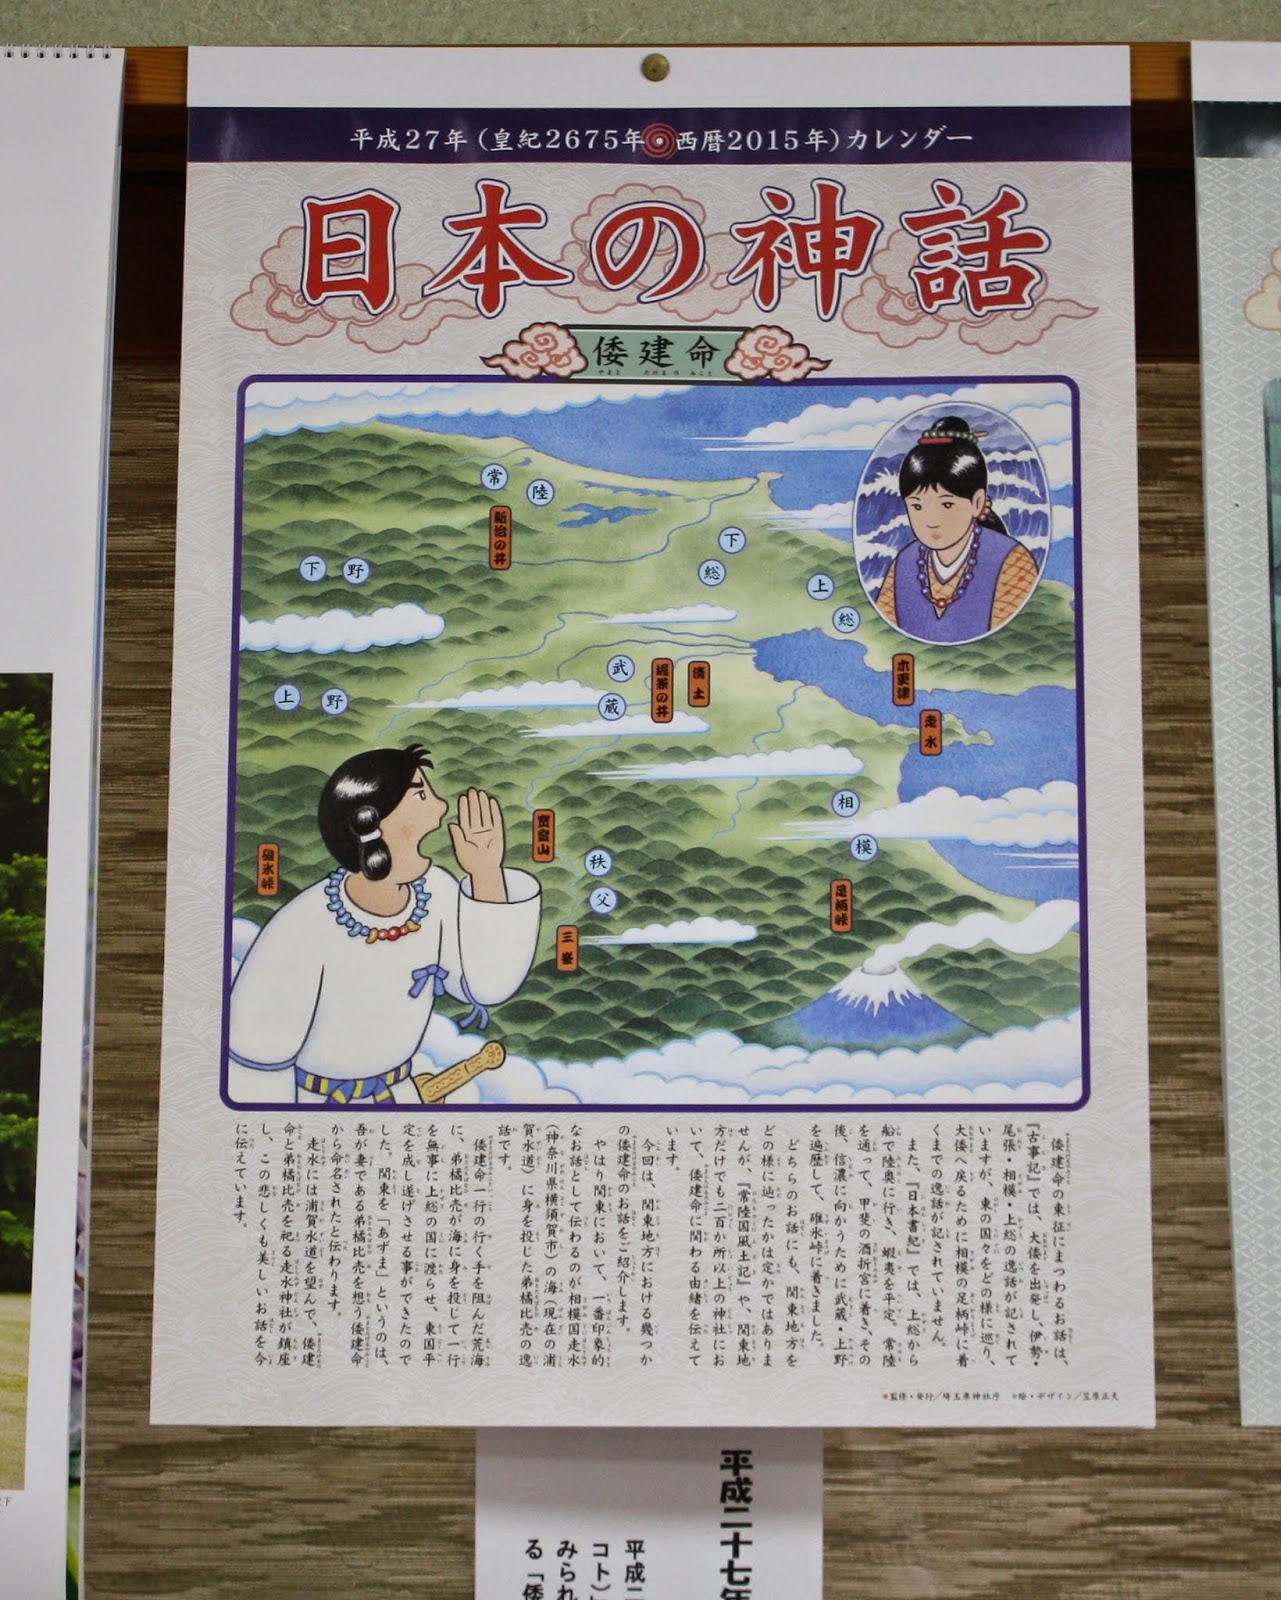 茂木八雲神社のブログ 平成27年神話カレンダー